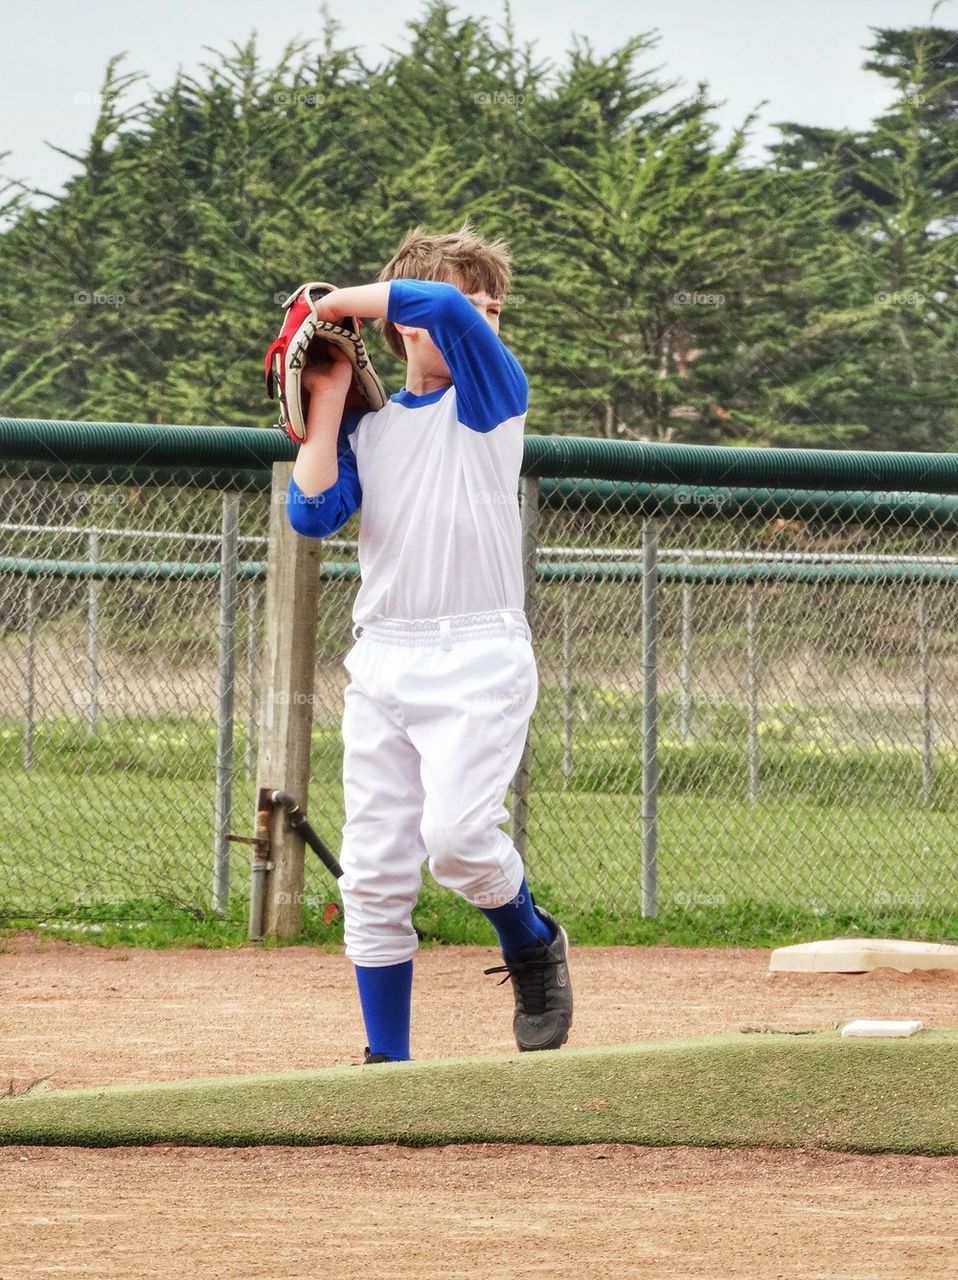 Little Leaguer Throwing A Baseball

